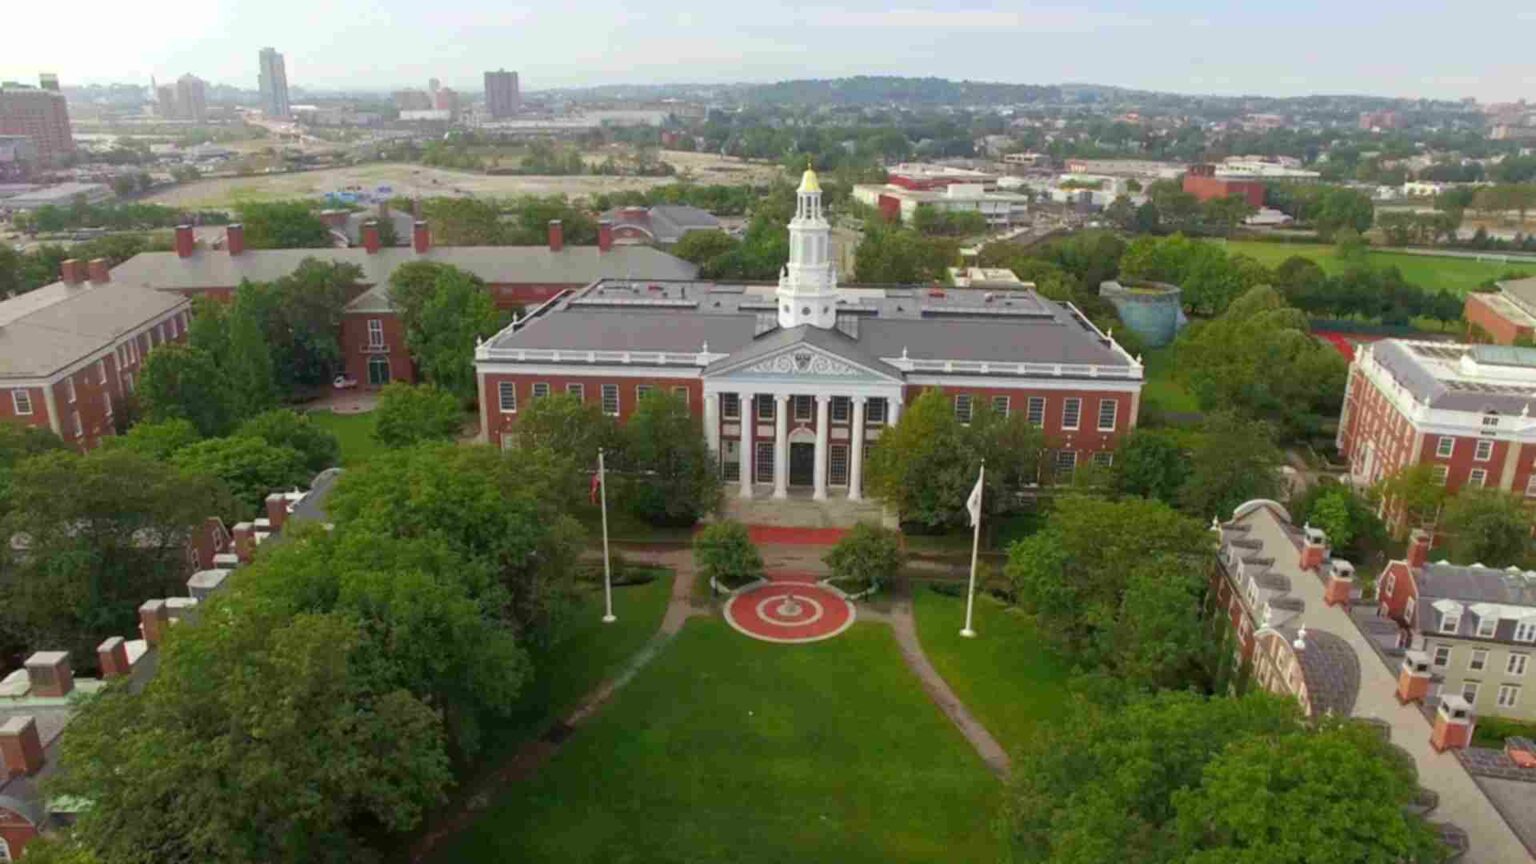 Birmingham area leaders participate in prestigious Harvard Business